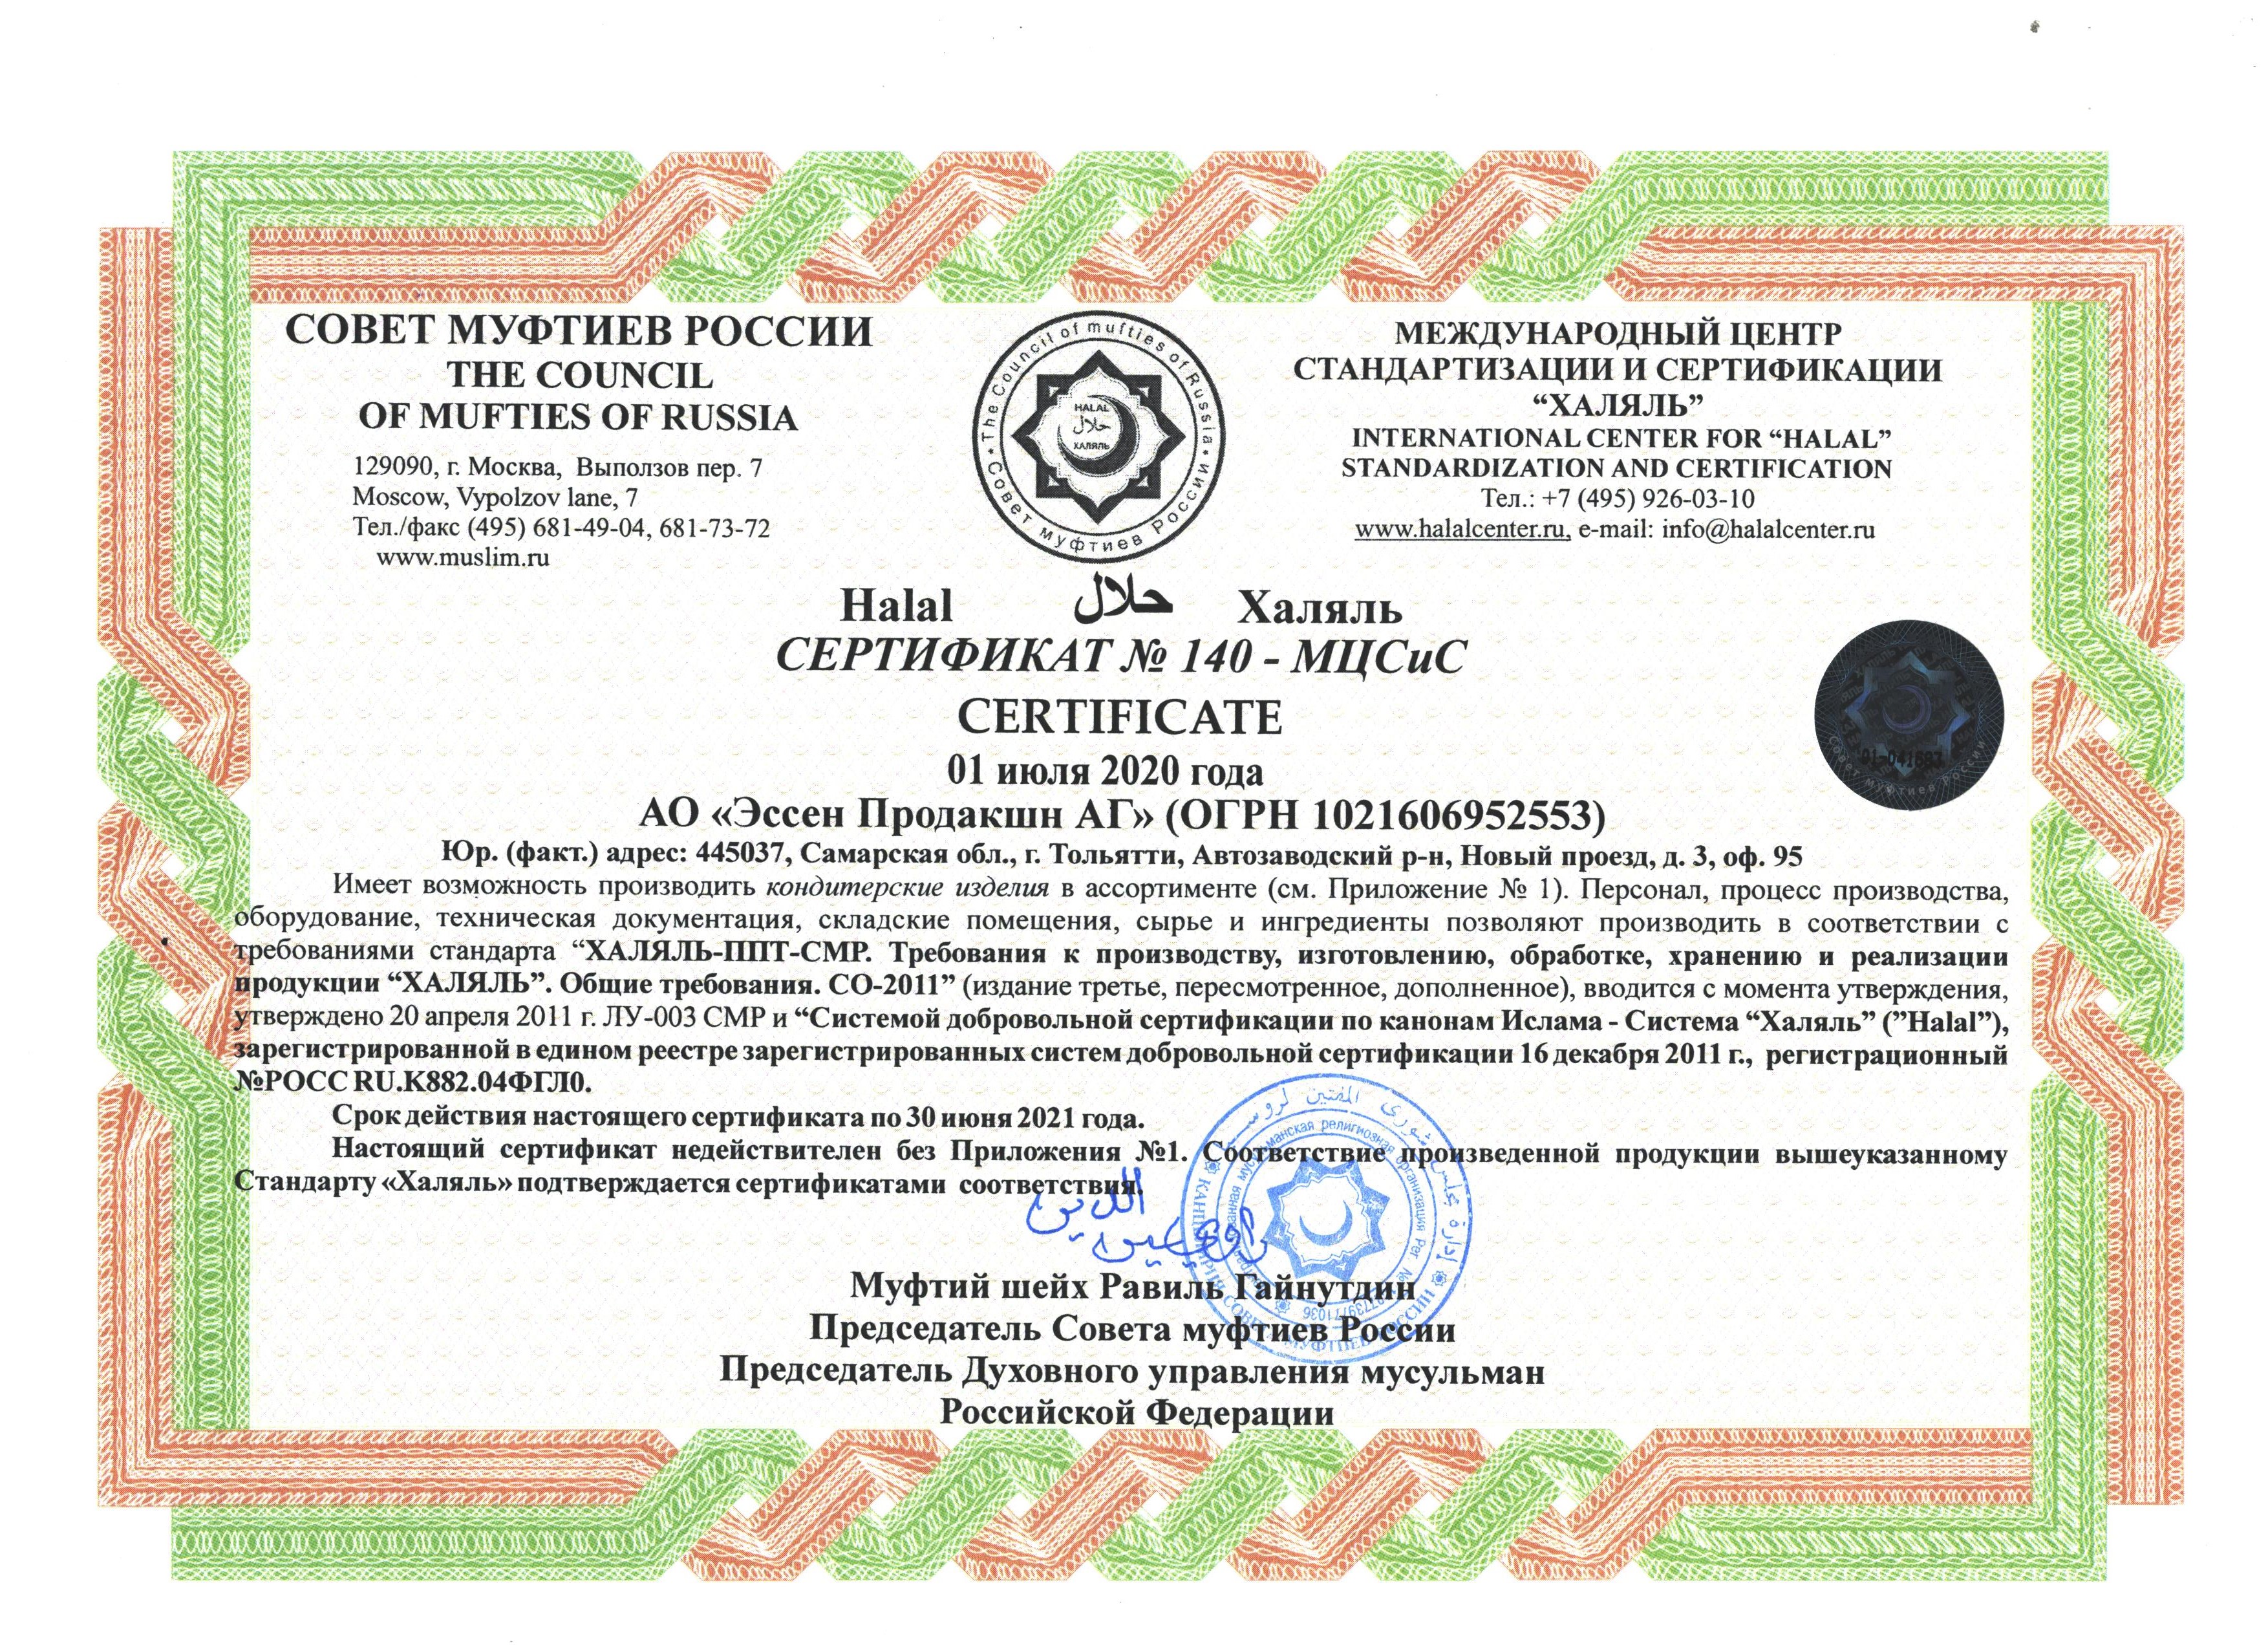  «Эссен Продакшн АГ» прошло повторную сертификацию на соответствие халяль